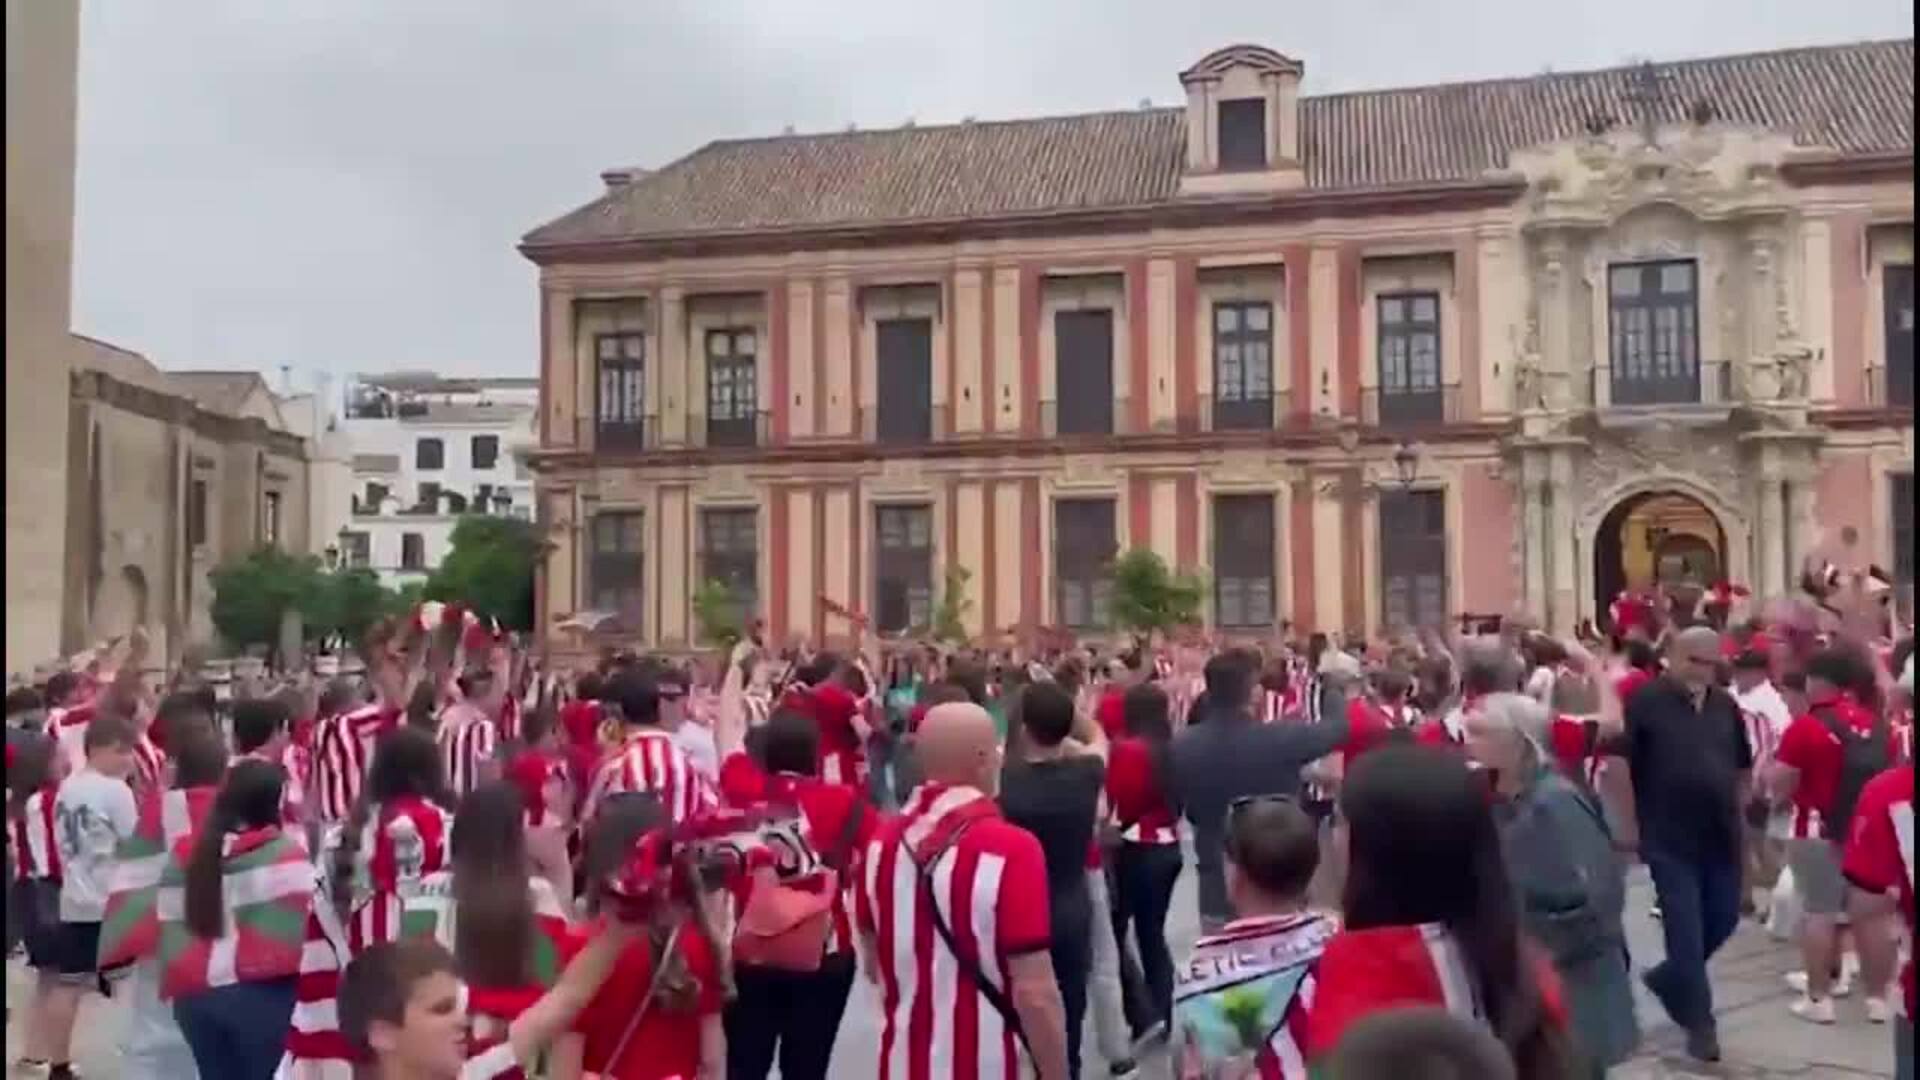 El Athletic Club, campeón de Copa del Rey tras ganar al Mallorca en los penaltis